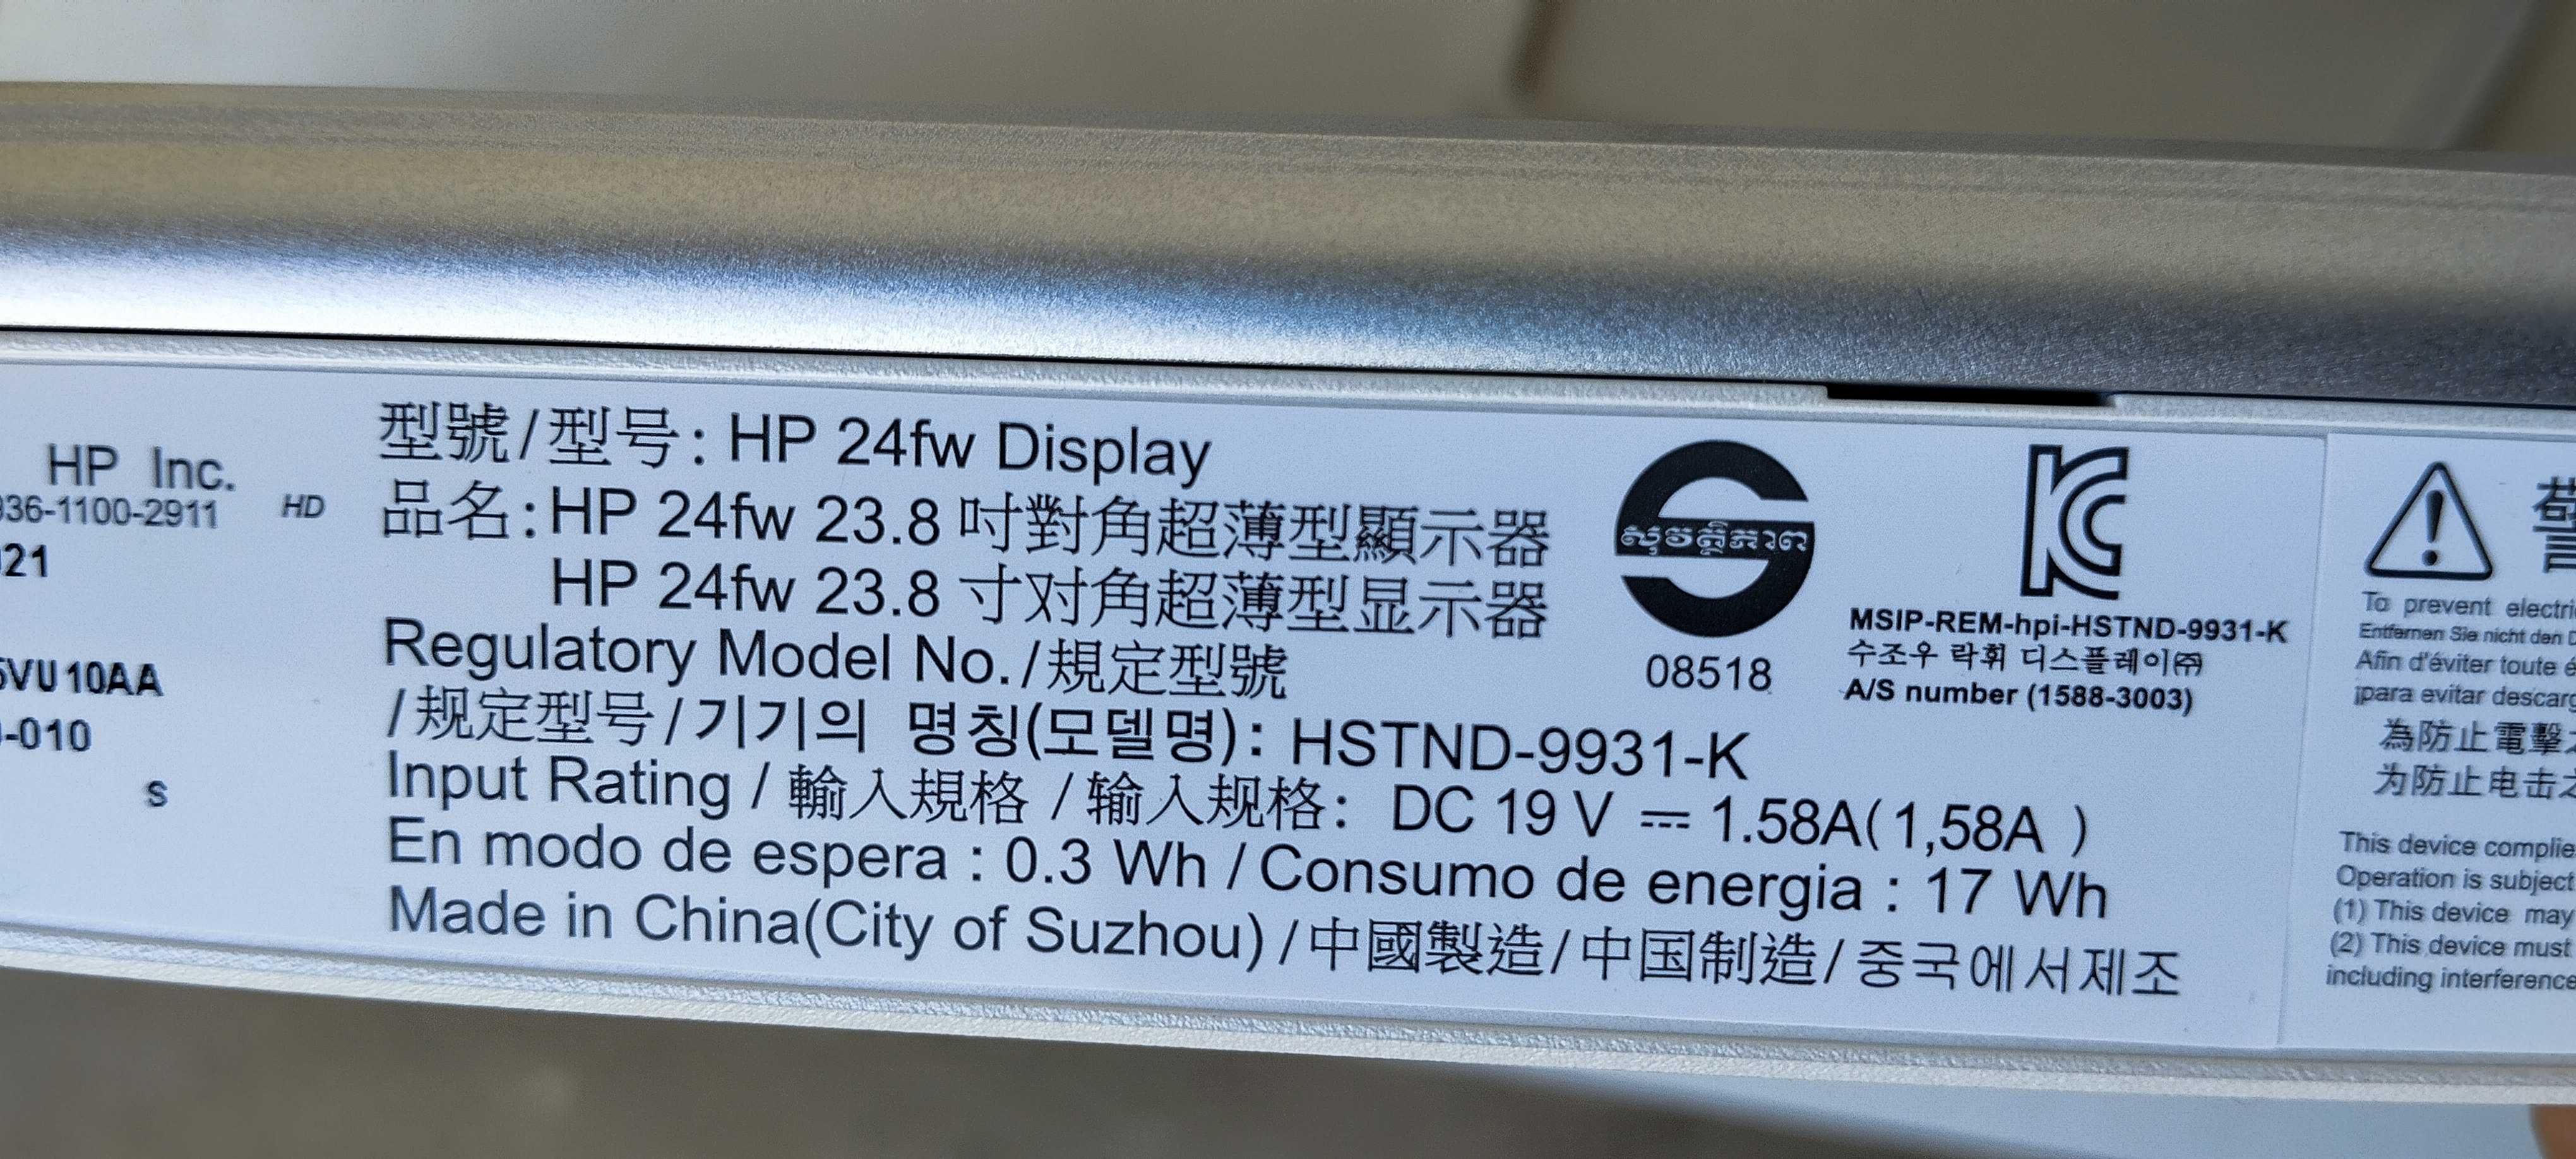 HP kompyuter komplekt